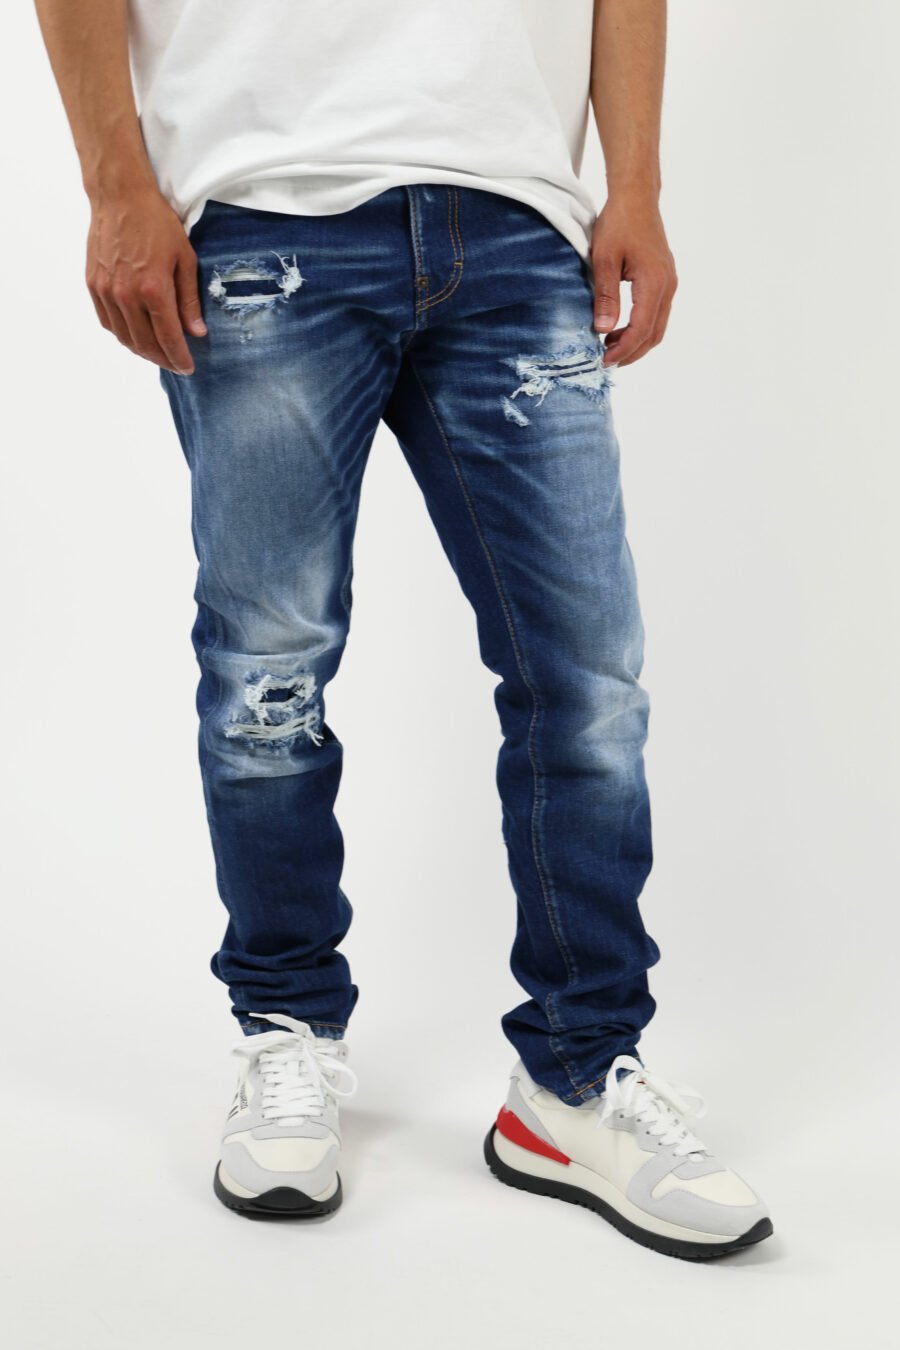 Pantalón vaquero azul claro "cool guy" con efecto lavado y rotos - 8054148339203 1 1